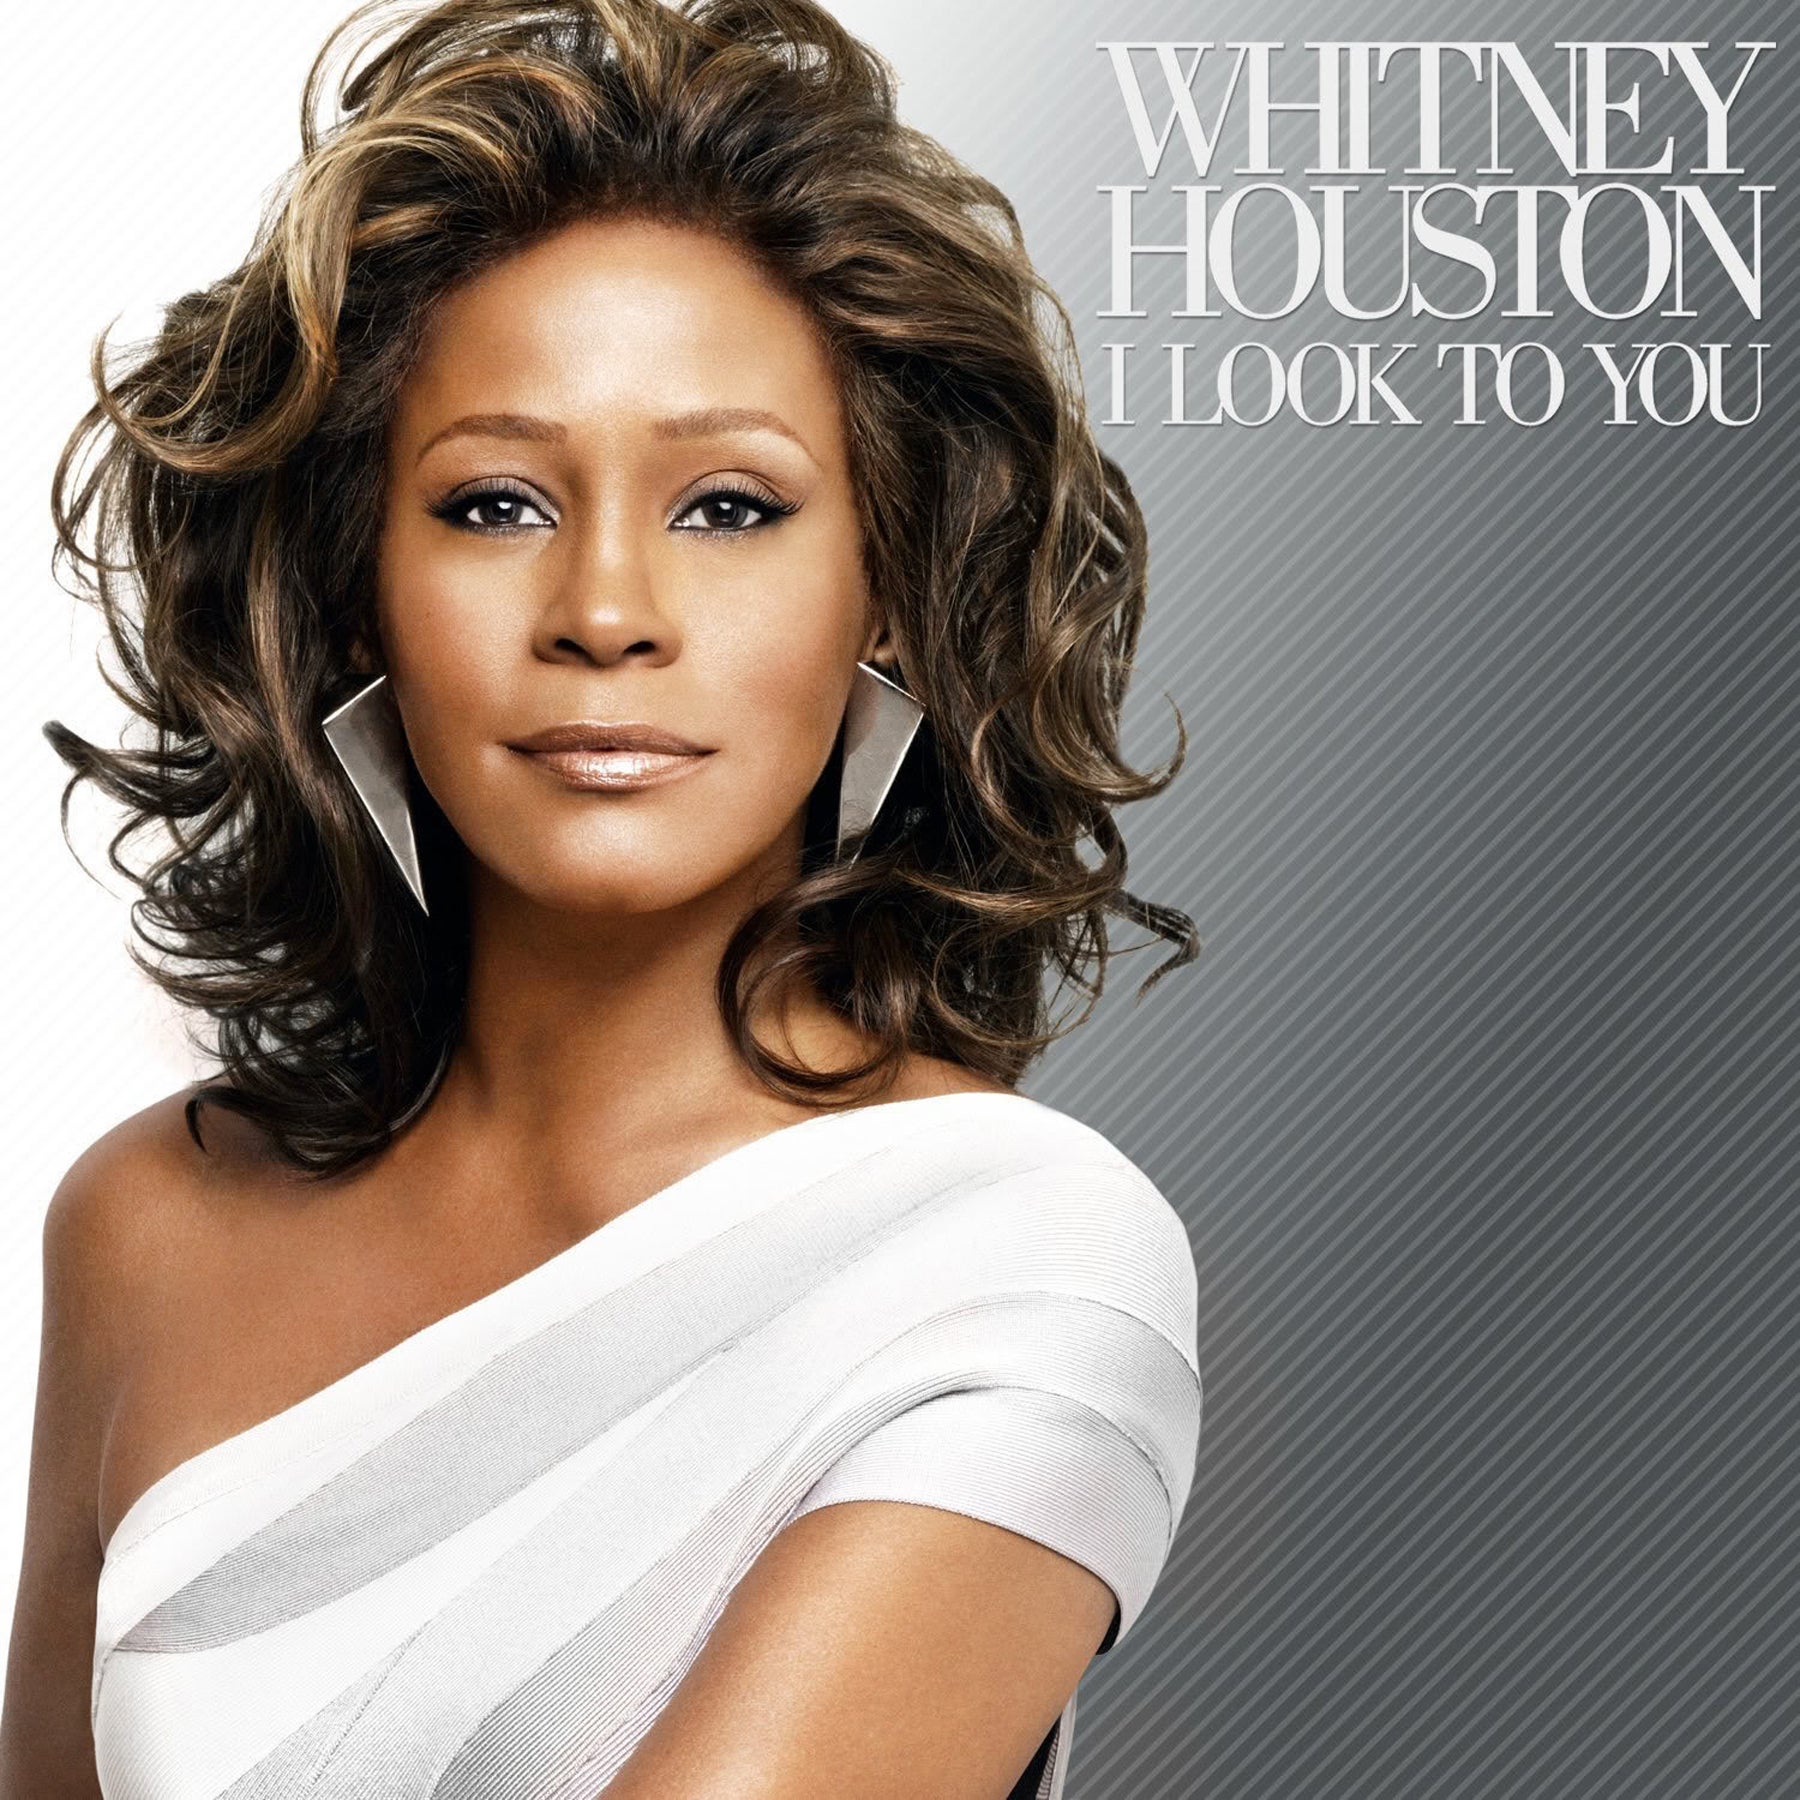 Whitney Houston: One Year Later